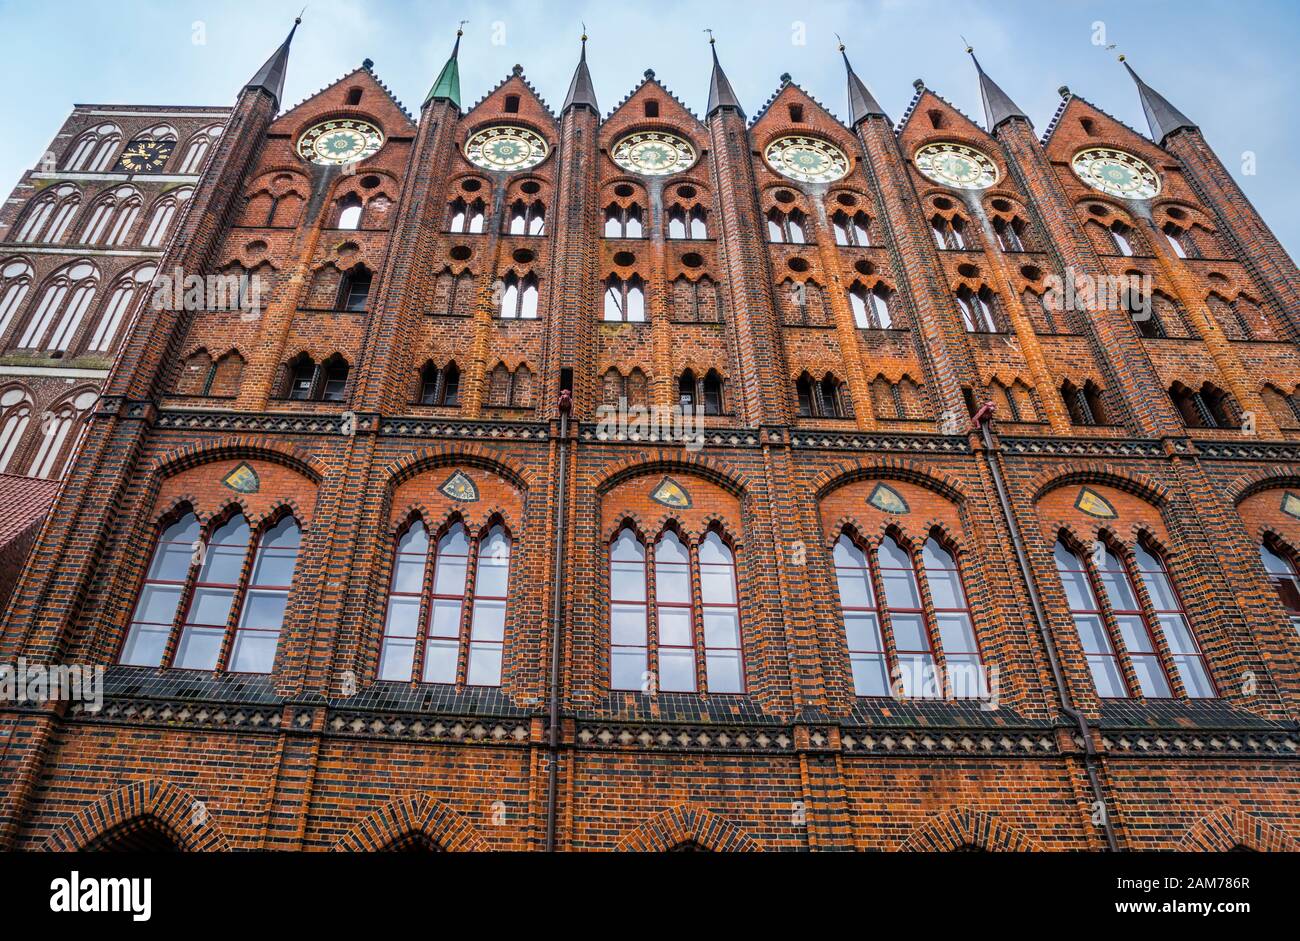 brick Gothic facade of the Stralsund town hall, Hanseatic town of Stralsund, Mecklenburg-Vorpommern, Germany Stock Photo